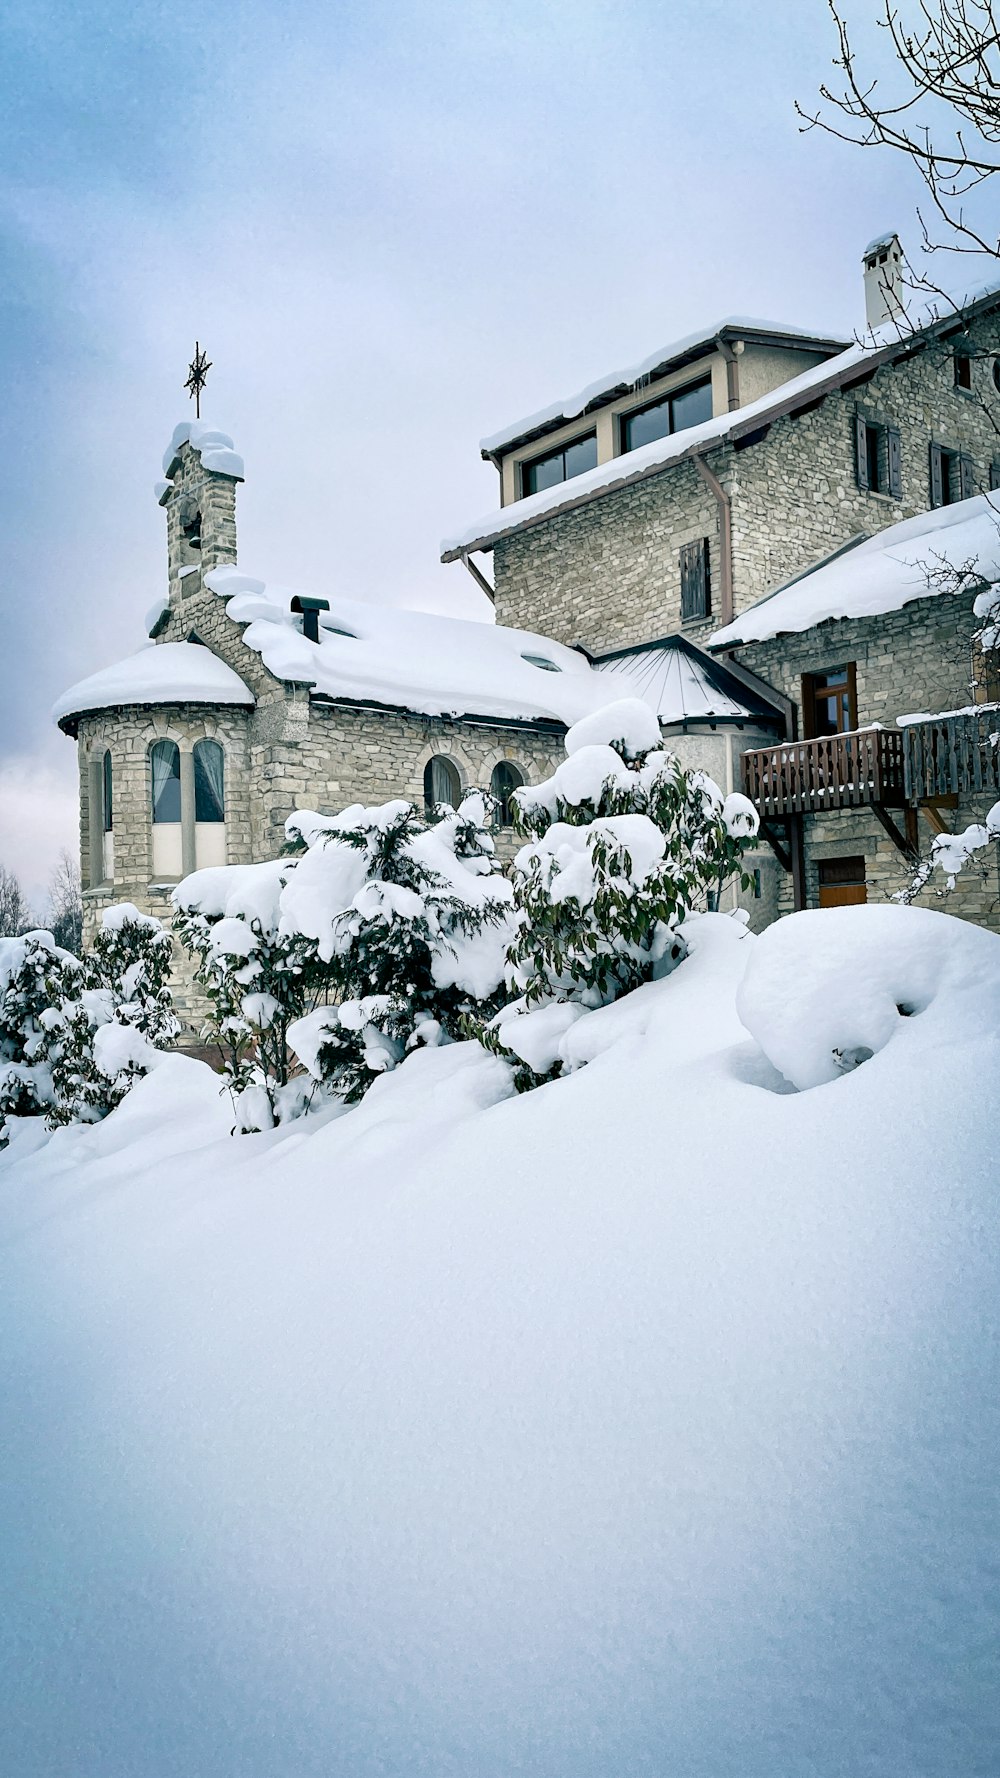 Una casa coperta di neve con una torre dell'orologio sullo sfondo